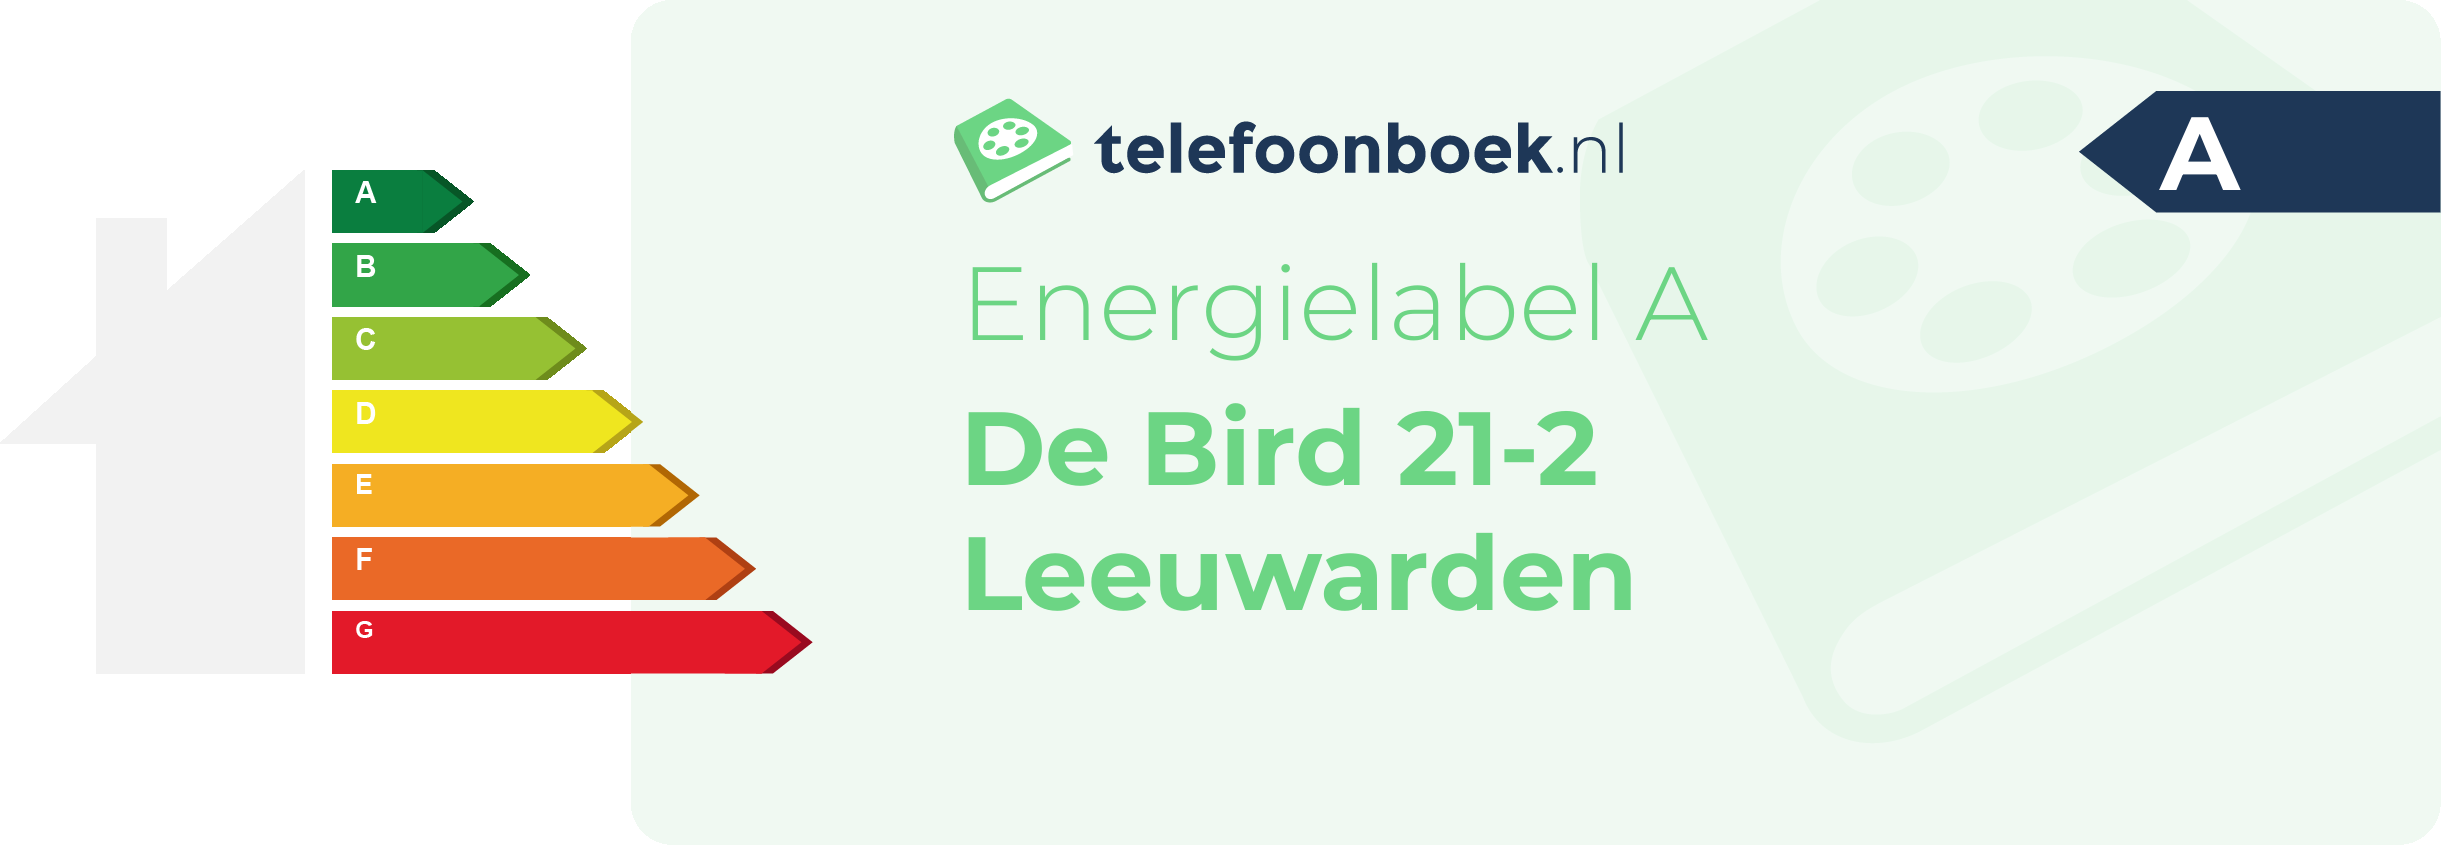 Energielabel De Bird 21-2 Leeuwarden